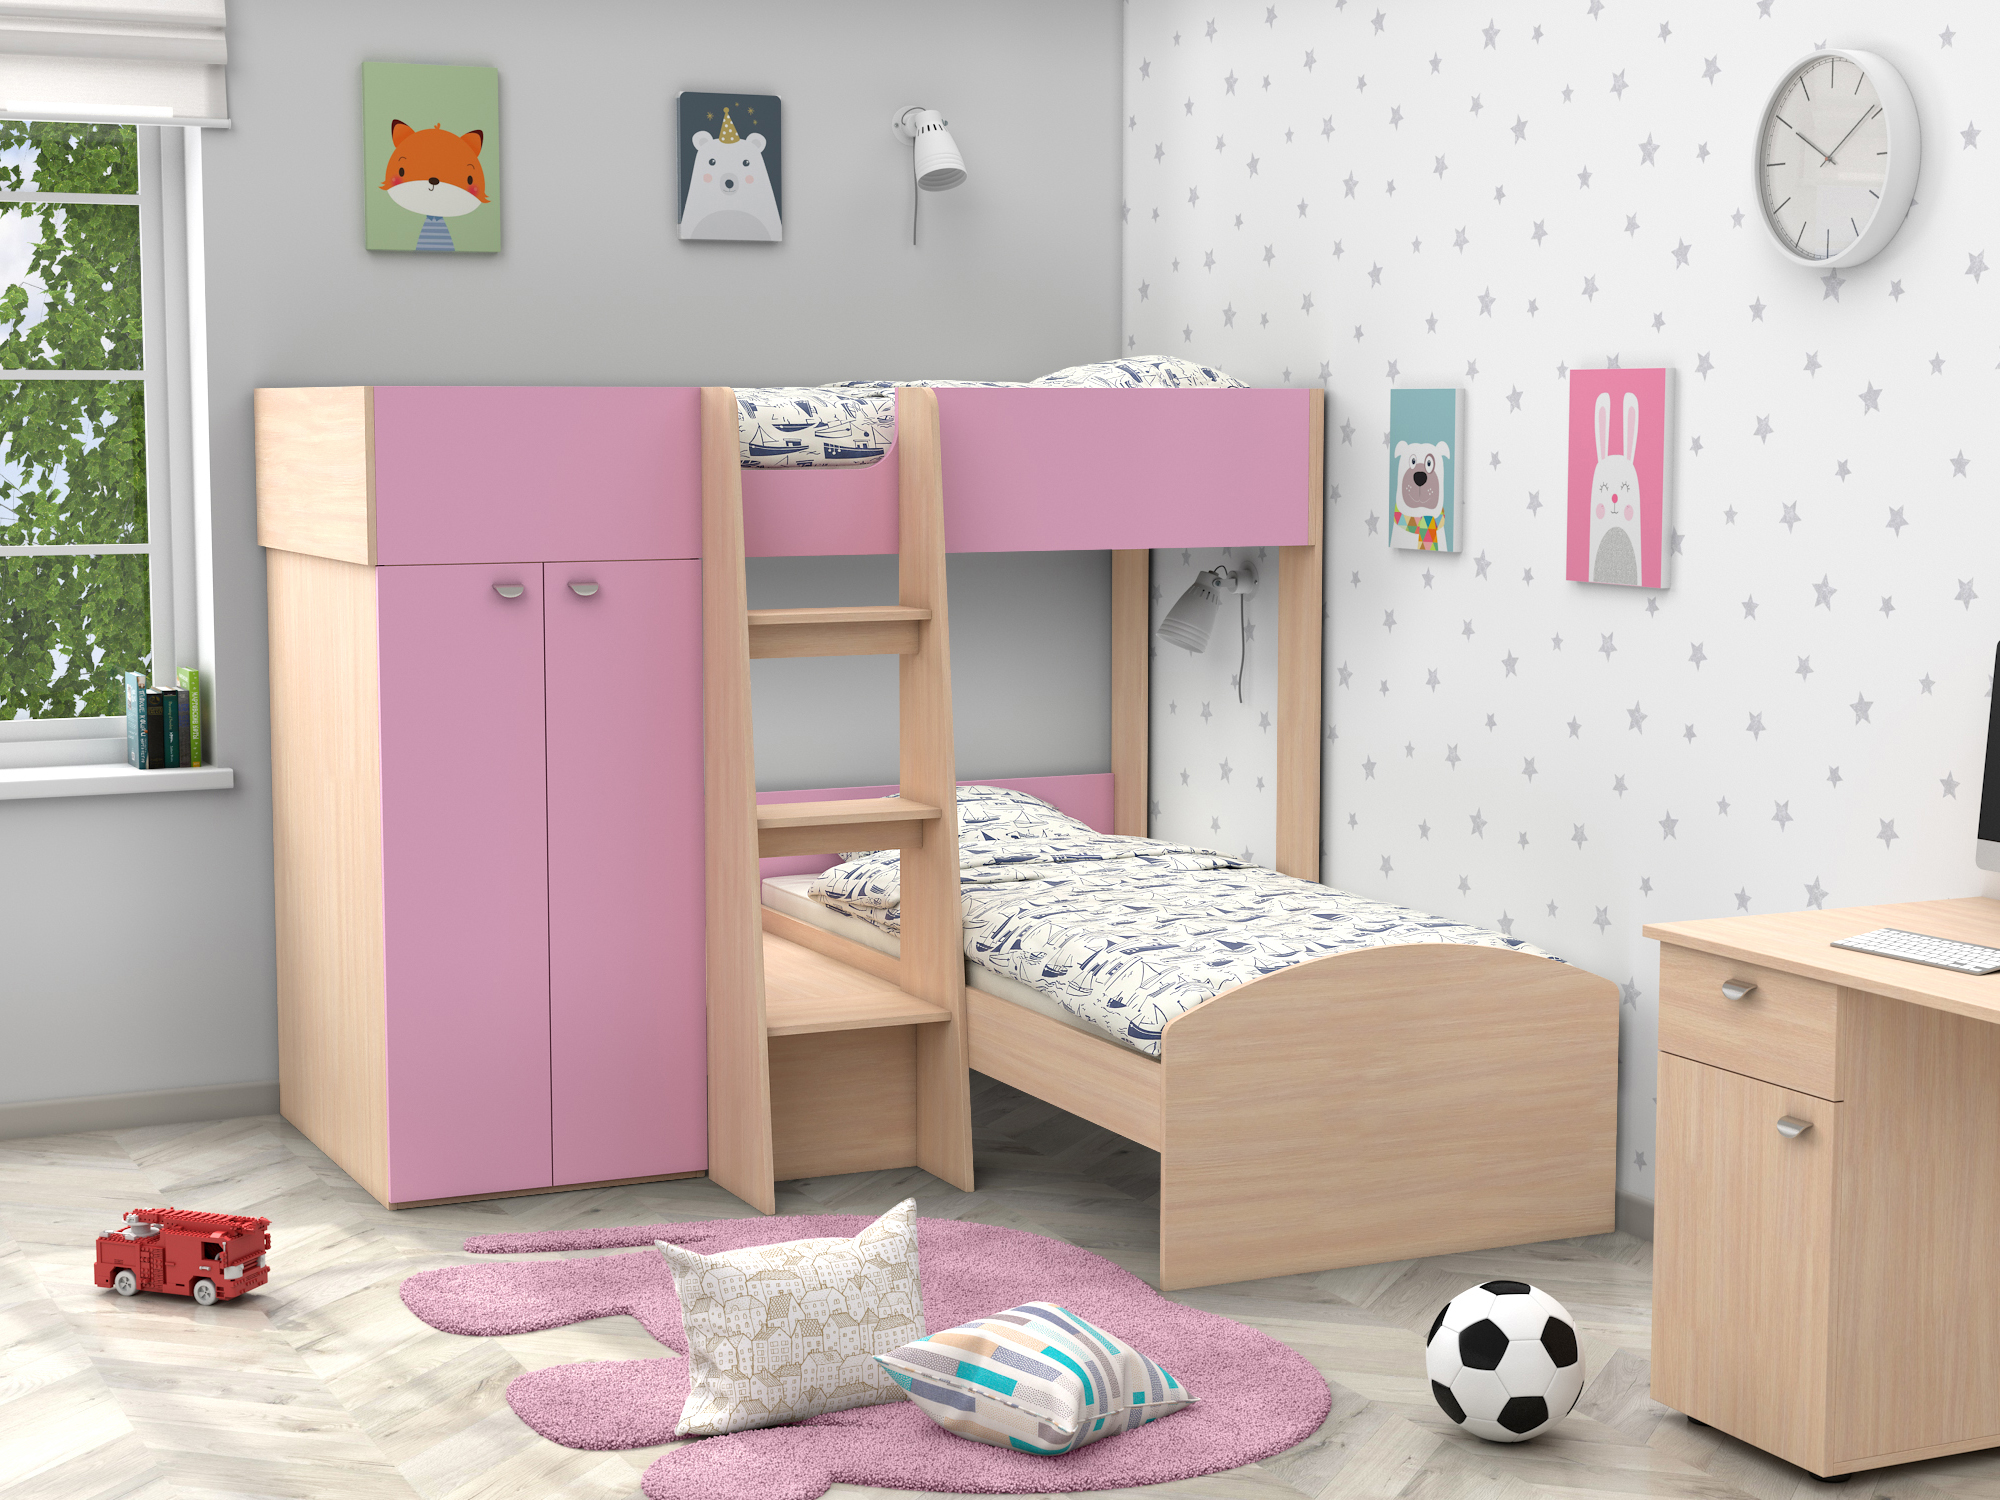 Двухъярусная кровать Golden Kids-4 (90х200) Розовый, Белый, Бежевый, ЛДСП двухъярусная кровать golden kids 4 90х200 бежевый коричневый темный лдсп